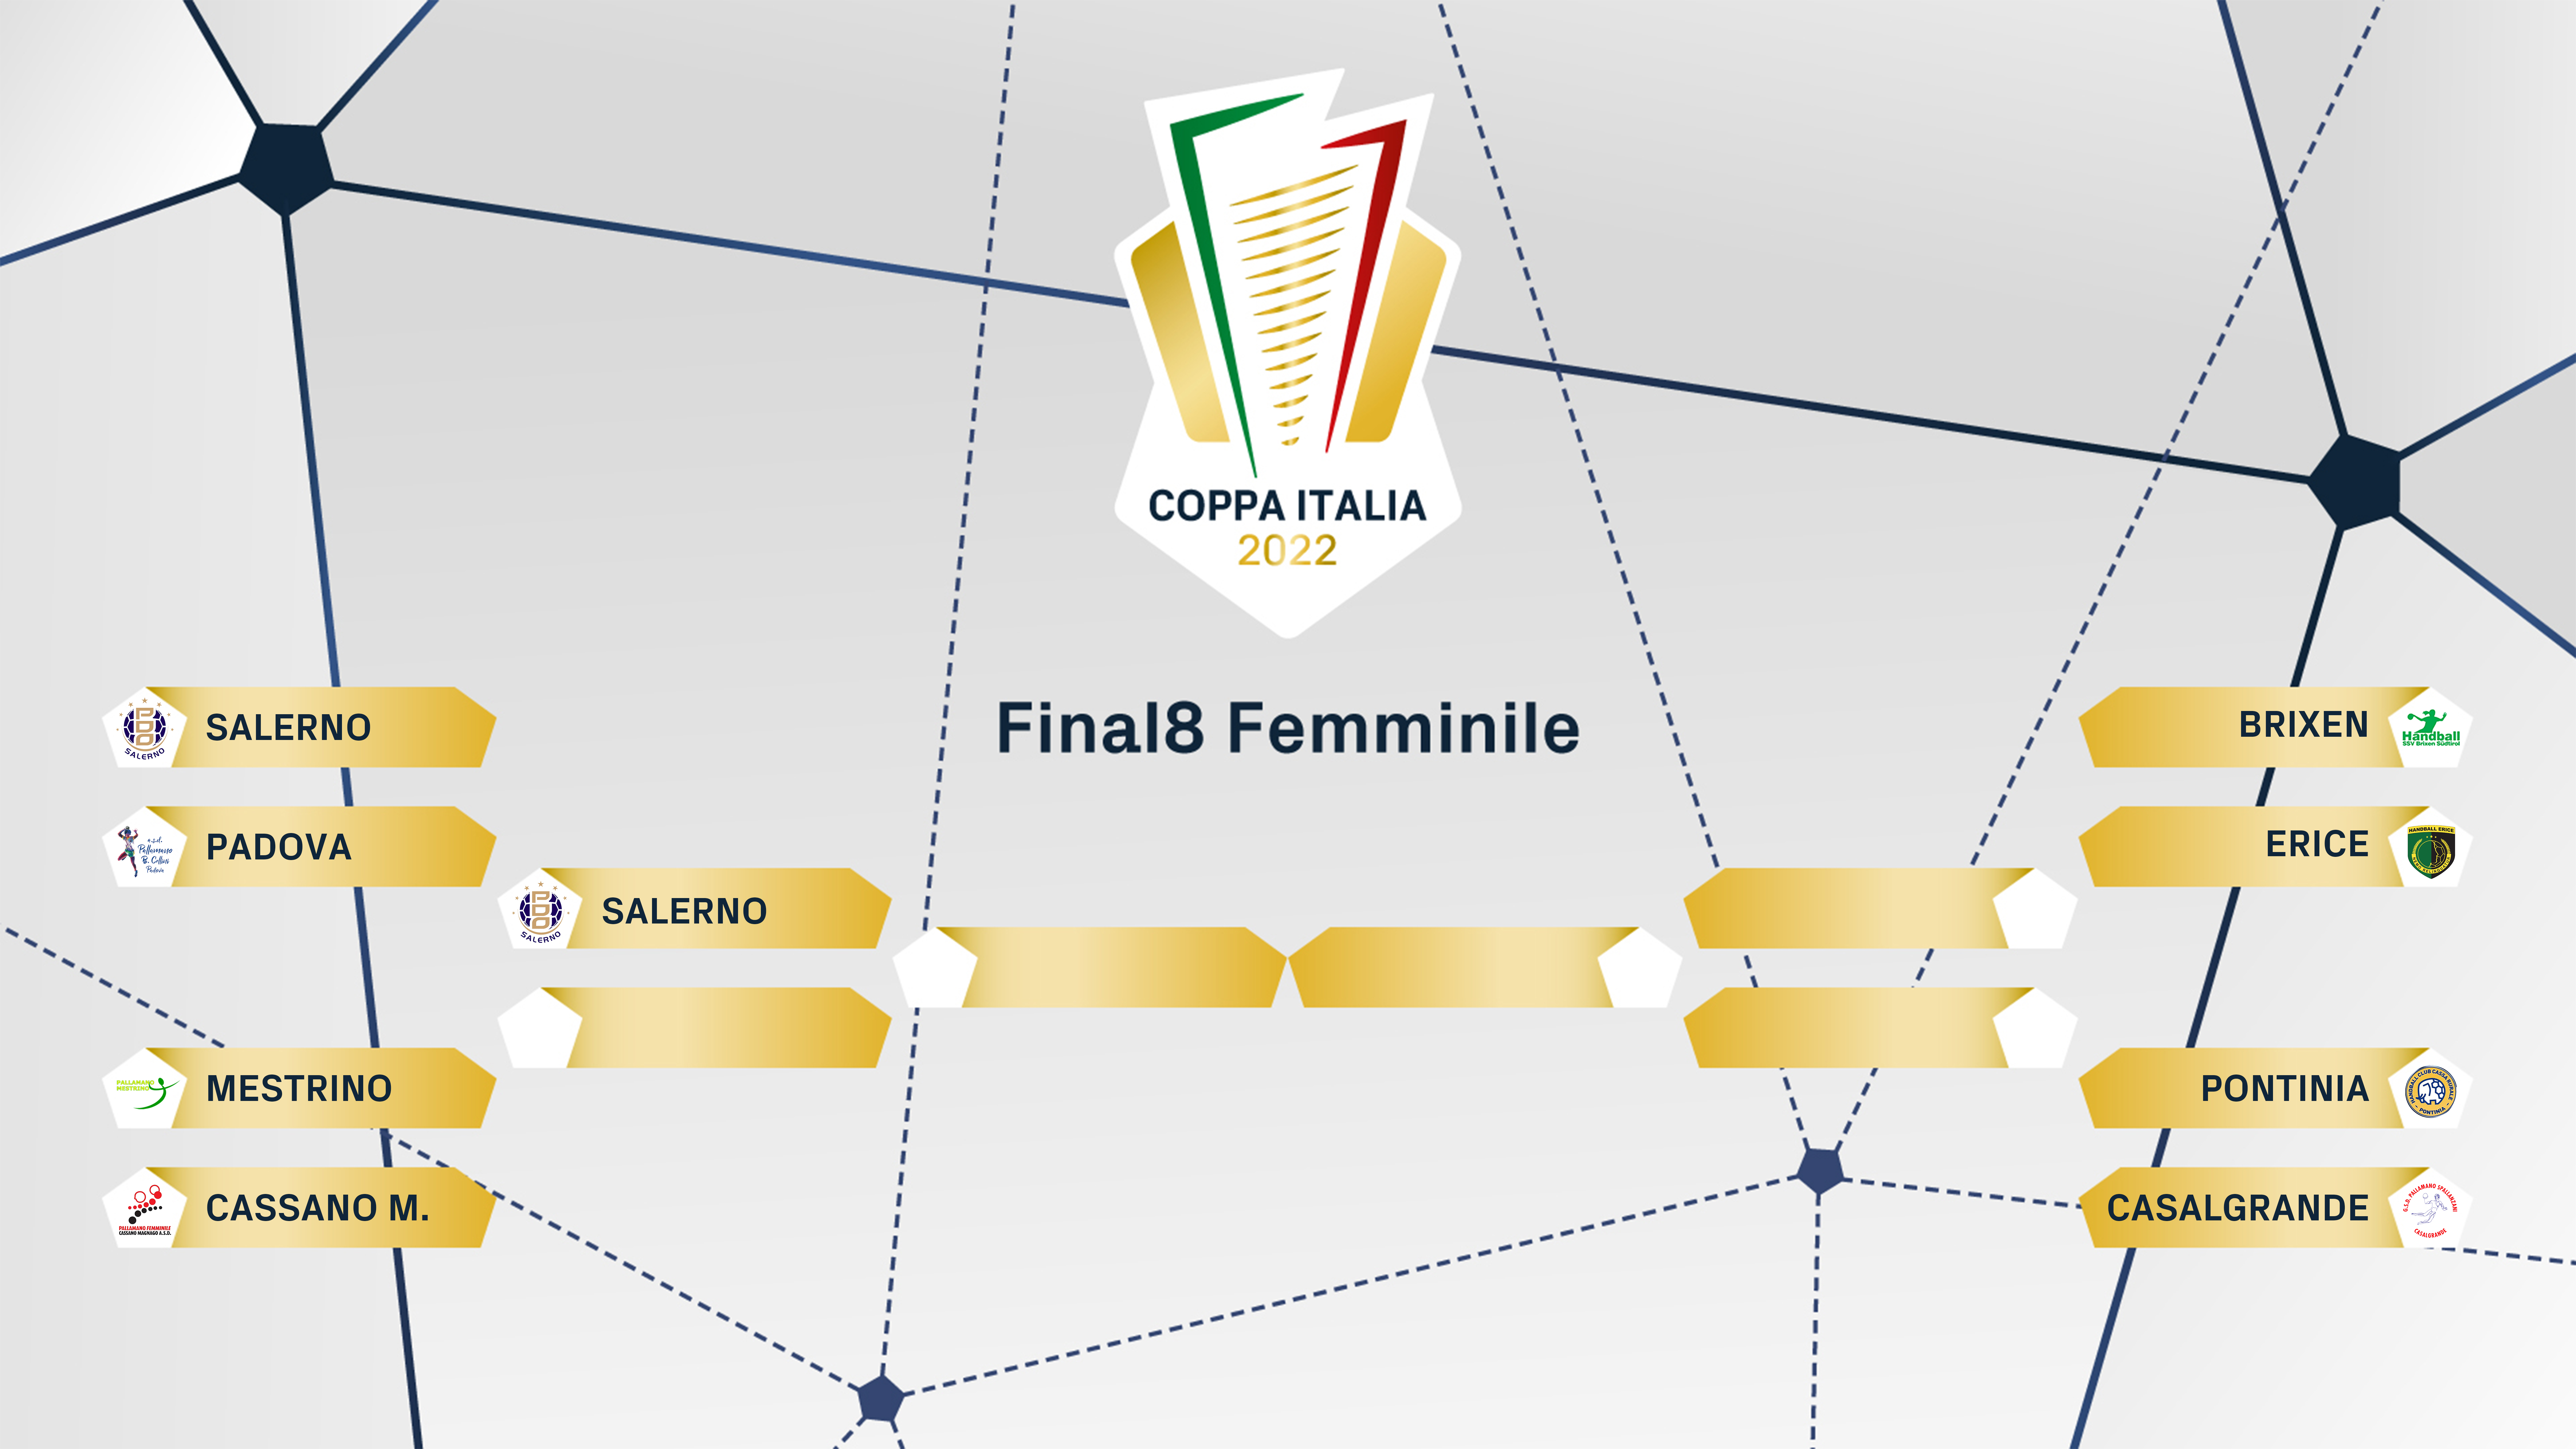 FIGH Coppa Italia tabelloni fem